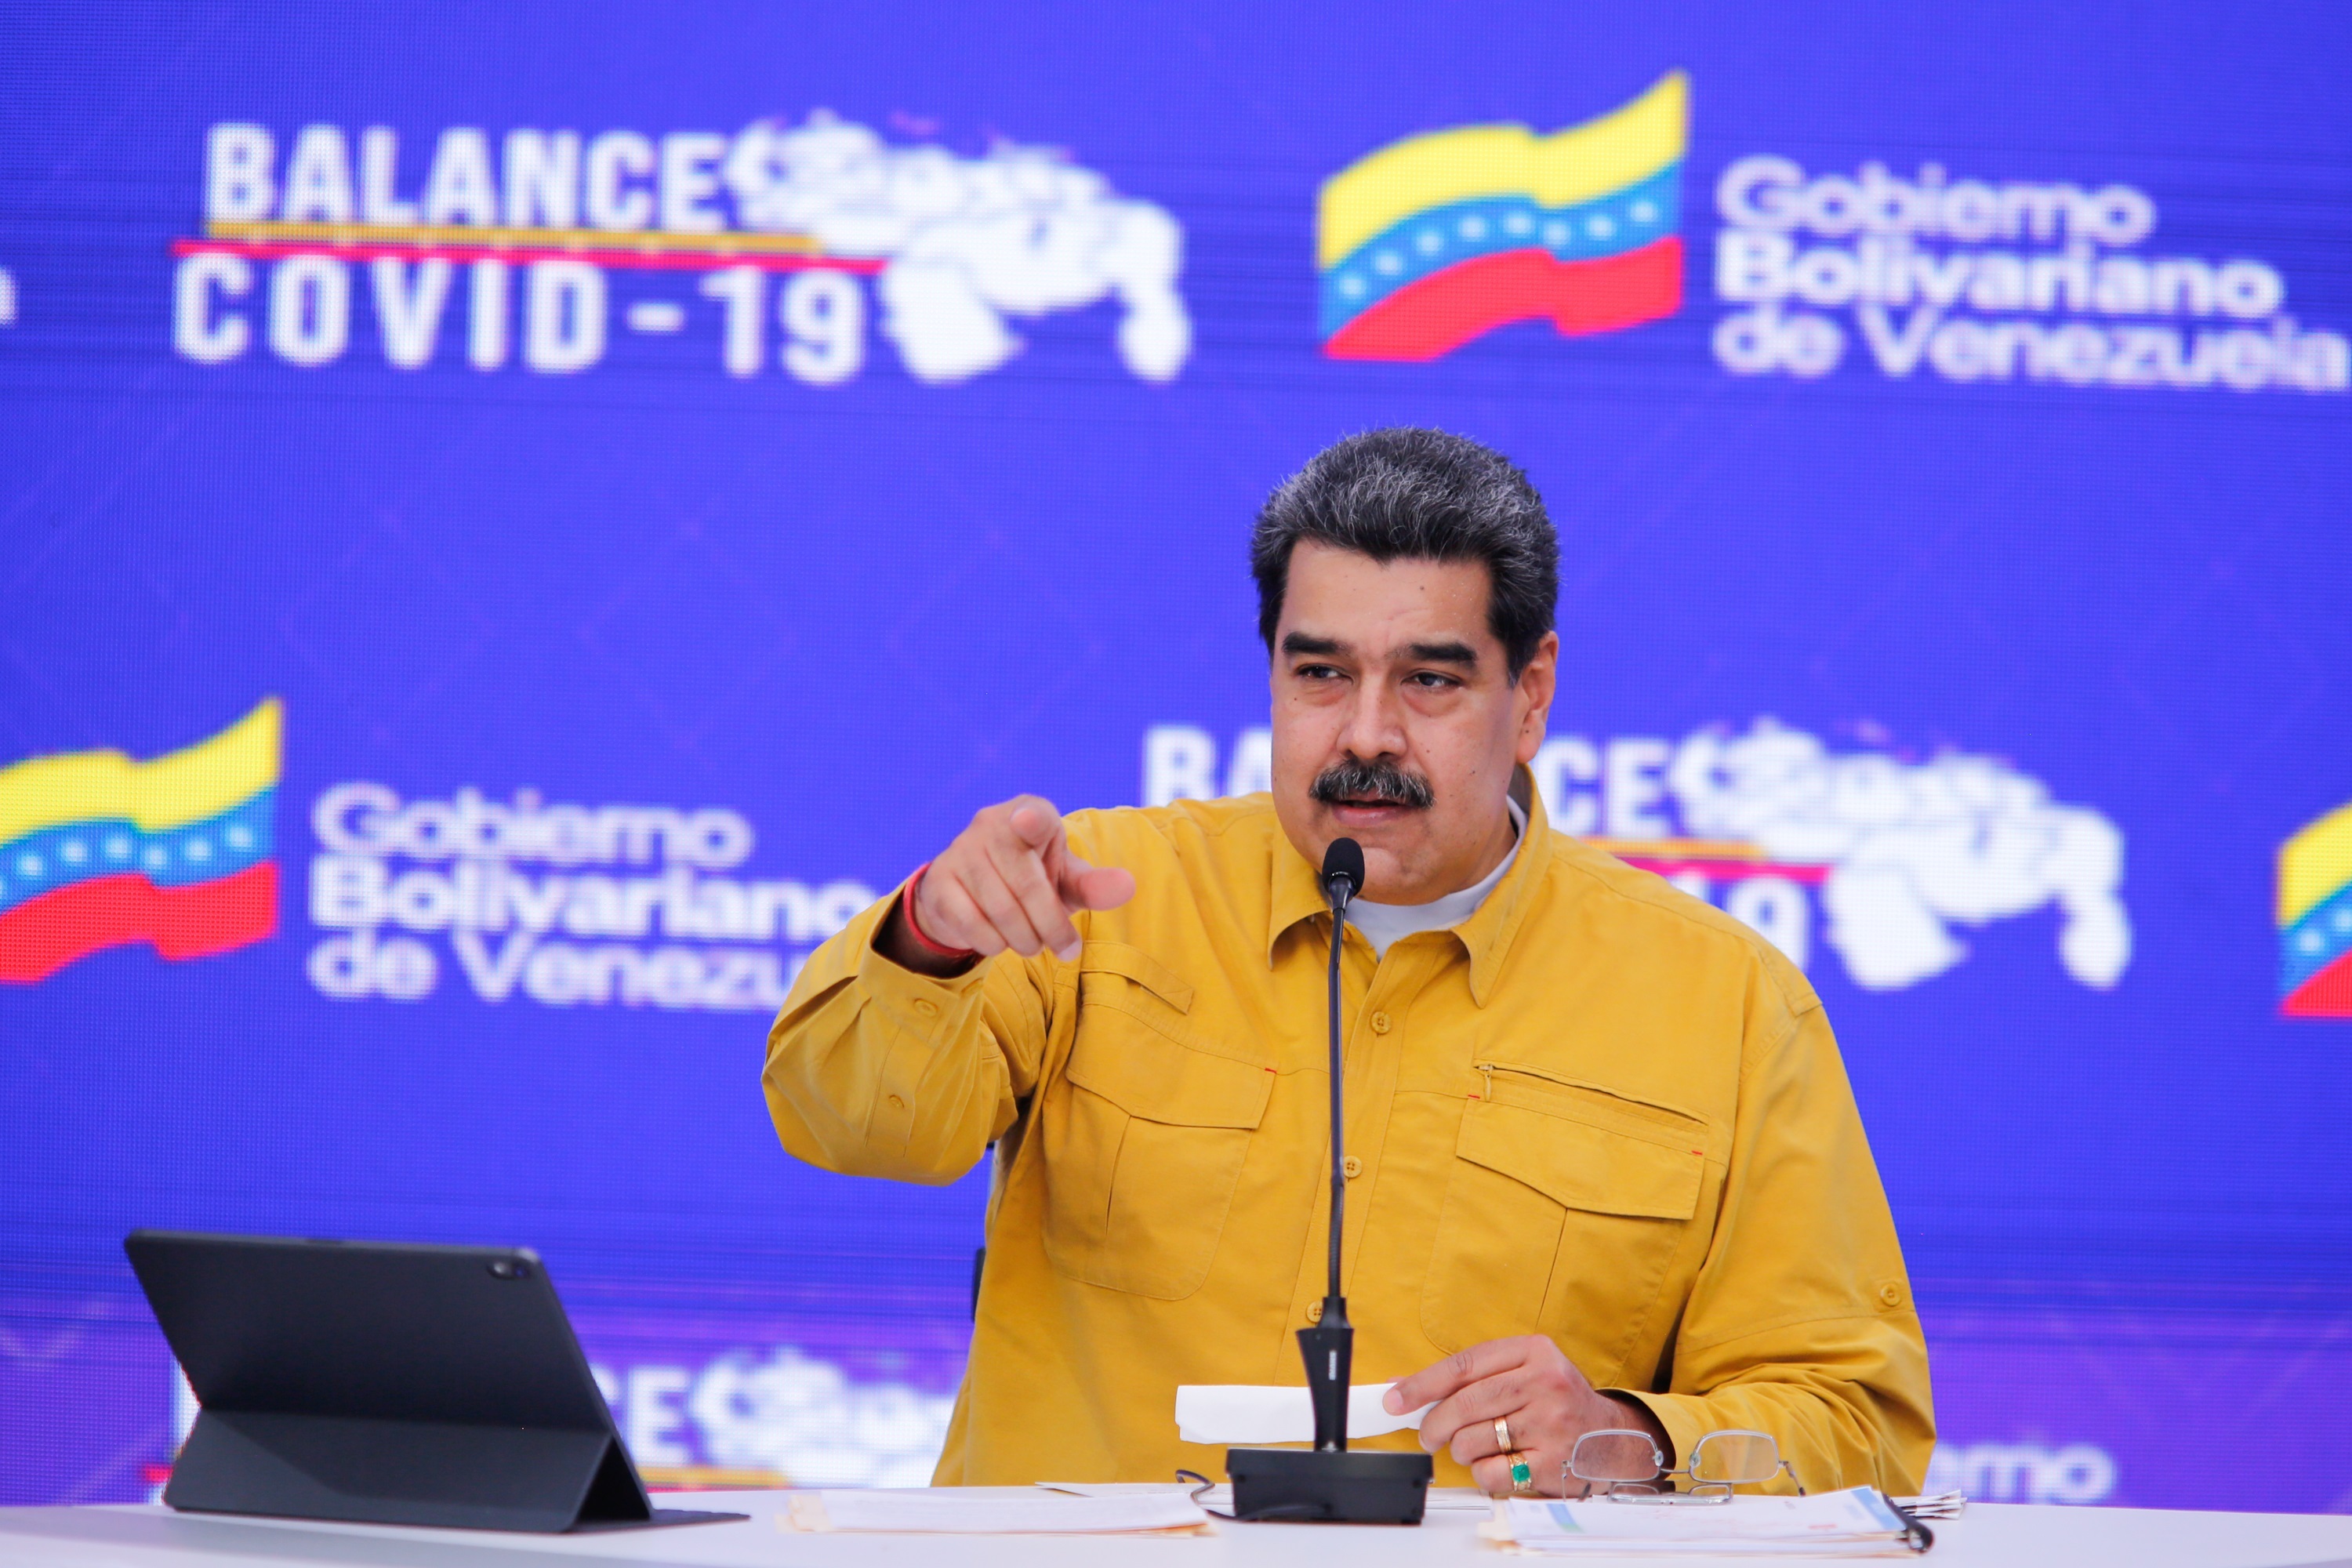 Fotografía de archivo cedida por la Prensa de Miraflores donde se observa al presidente venezolano, Nicolás Maduro. EFE/ Prensa Miraflores/Archivo
